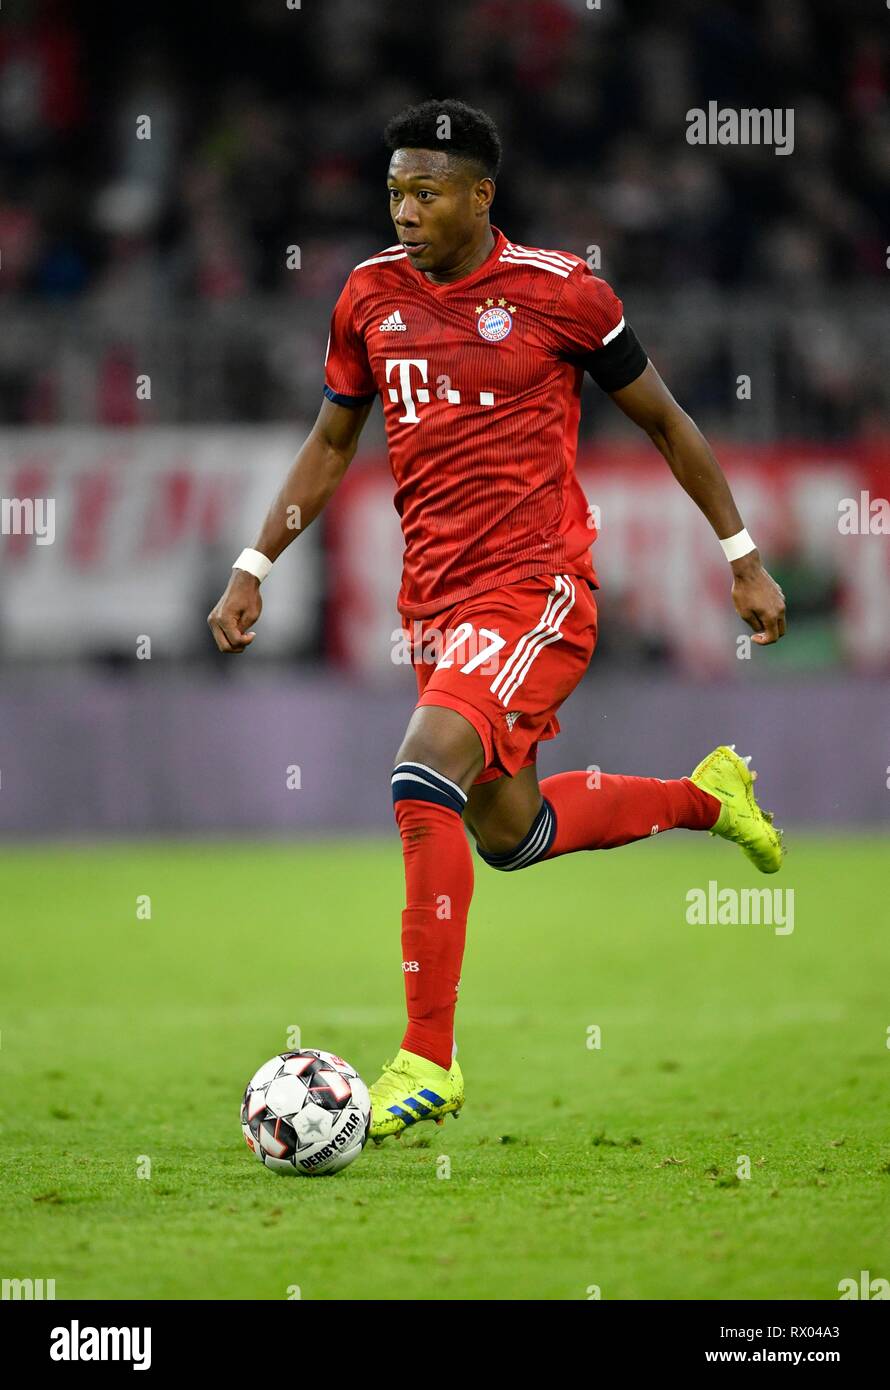 David Alaba FC Bayern Munich on the ball, Allianz Arena, Munich, Bavaria, Germany Stock Photo